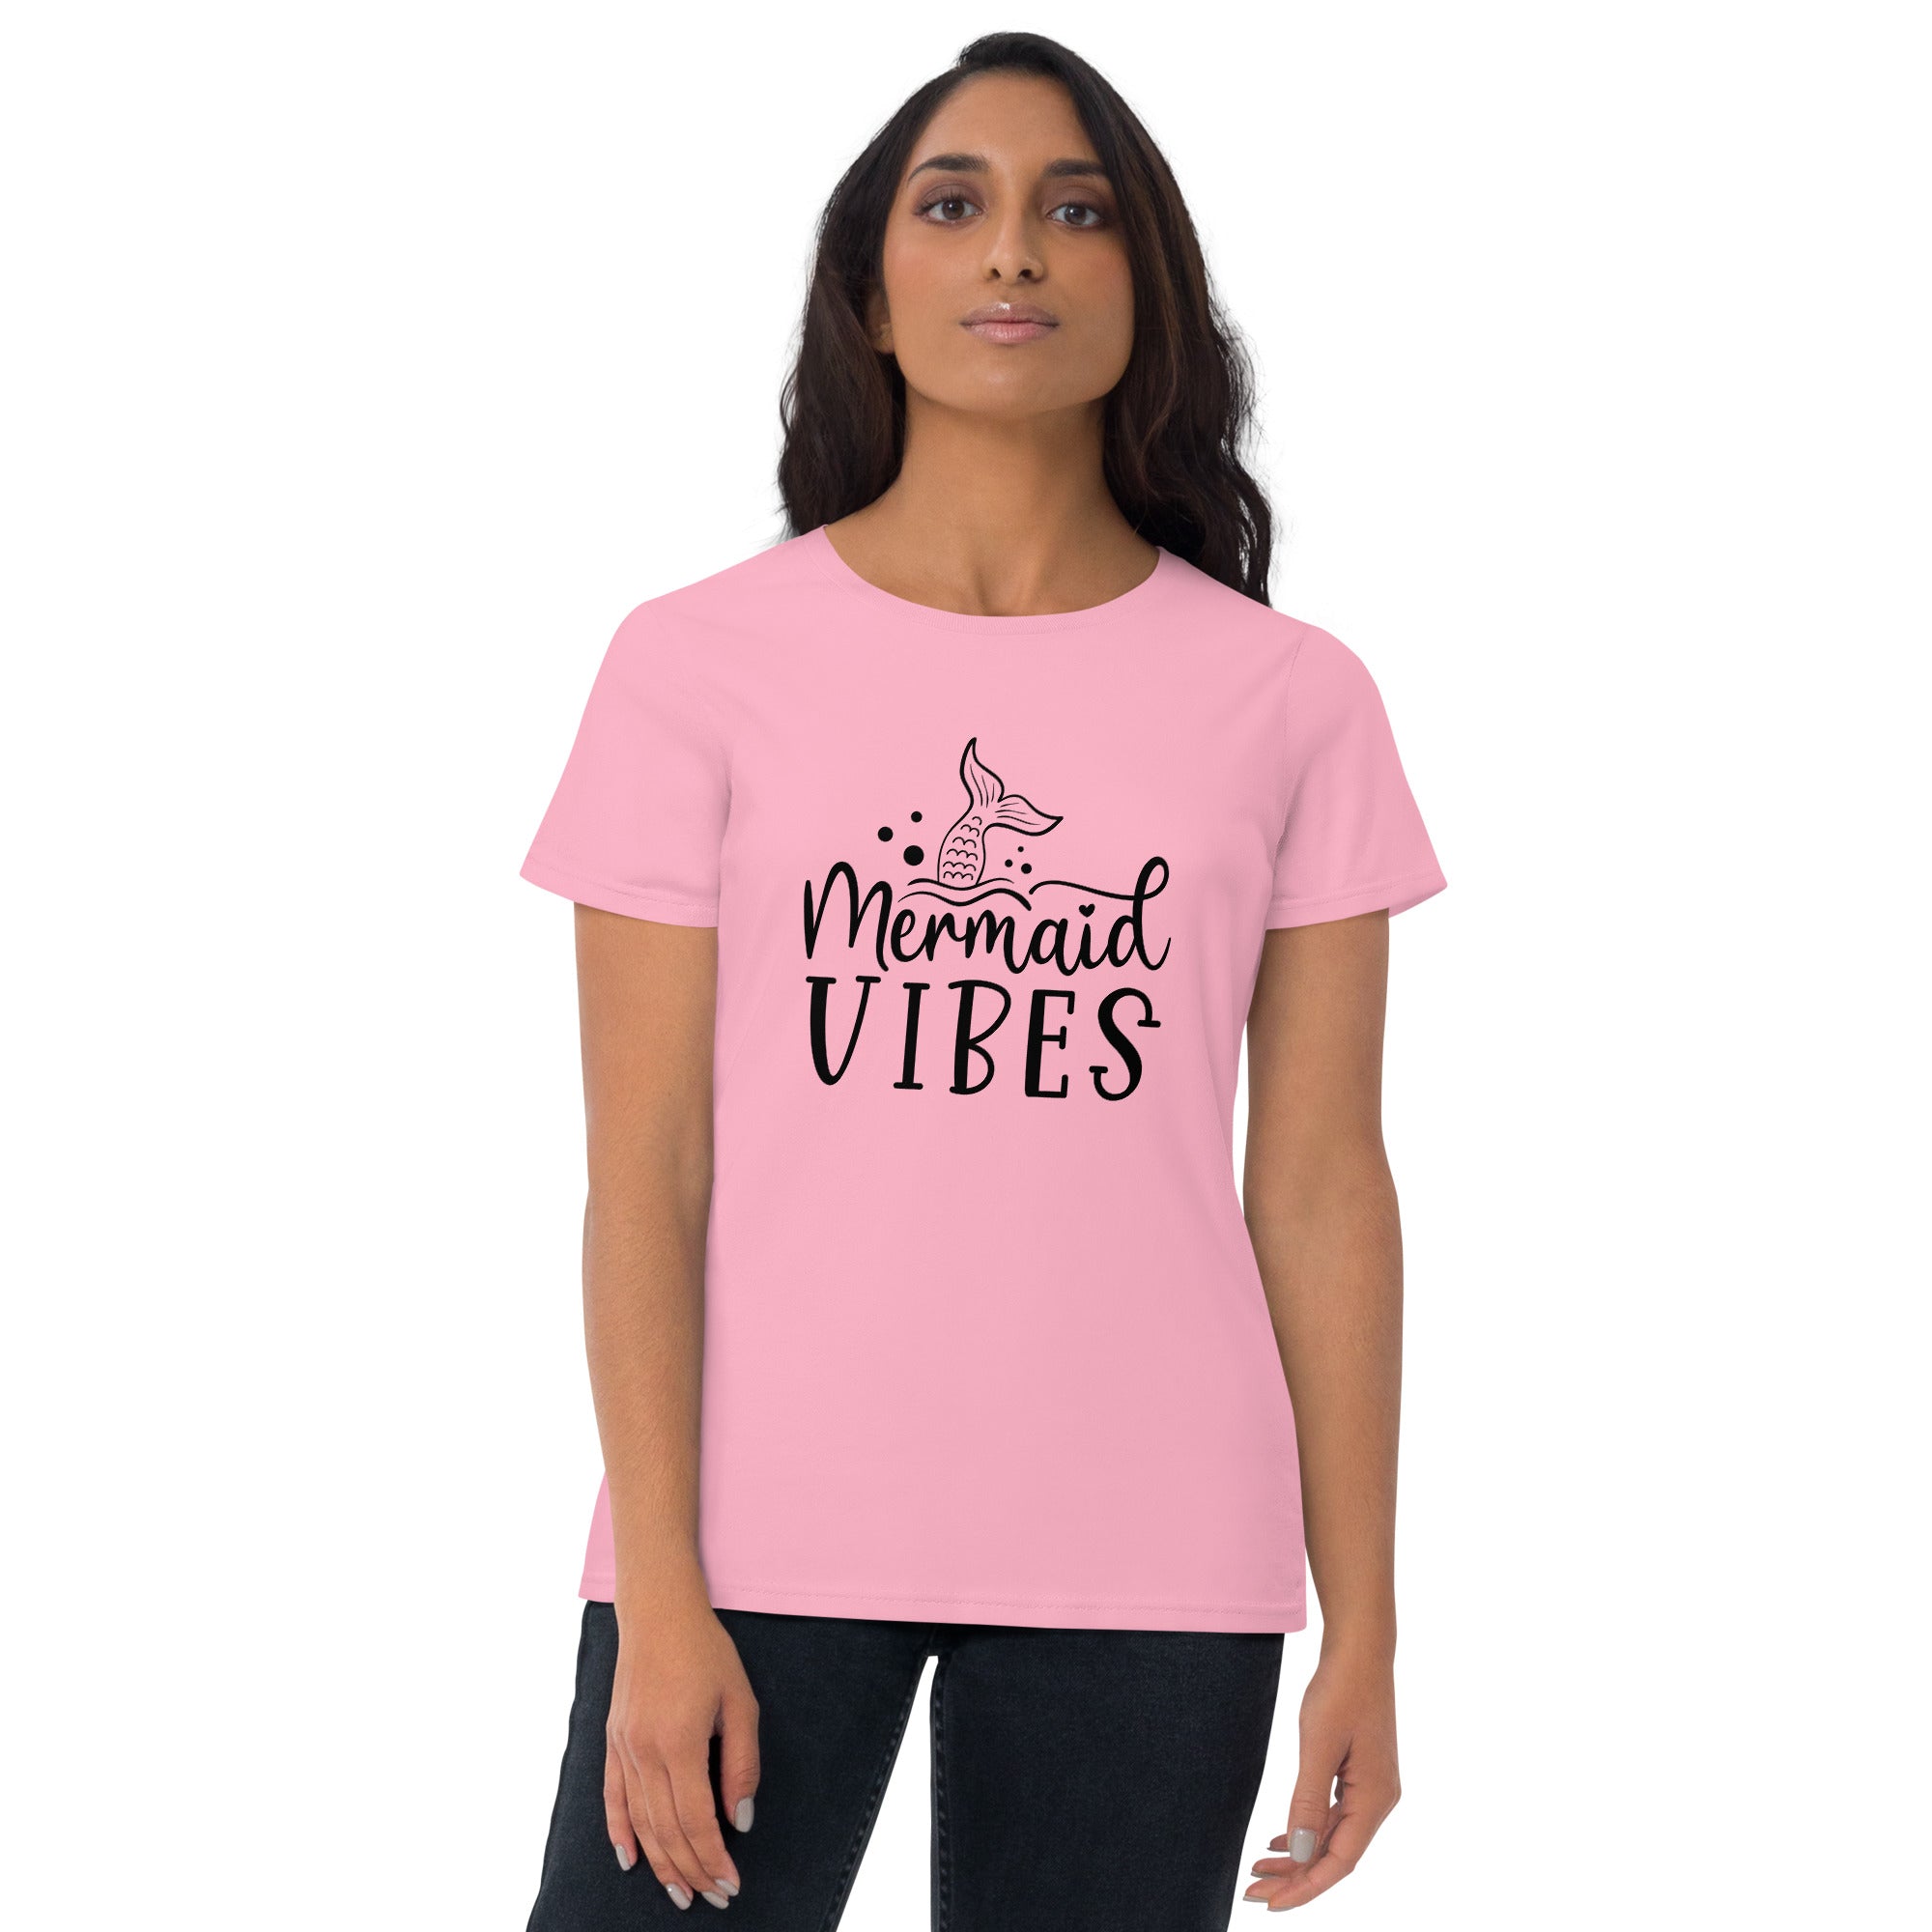 Mermaid Vibes - Women's T-Shirt